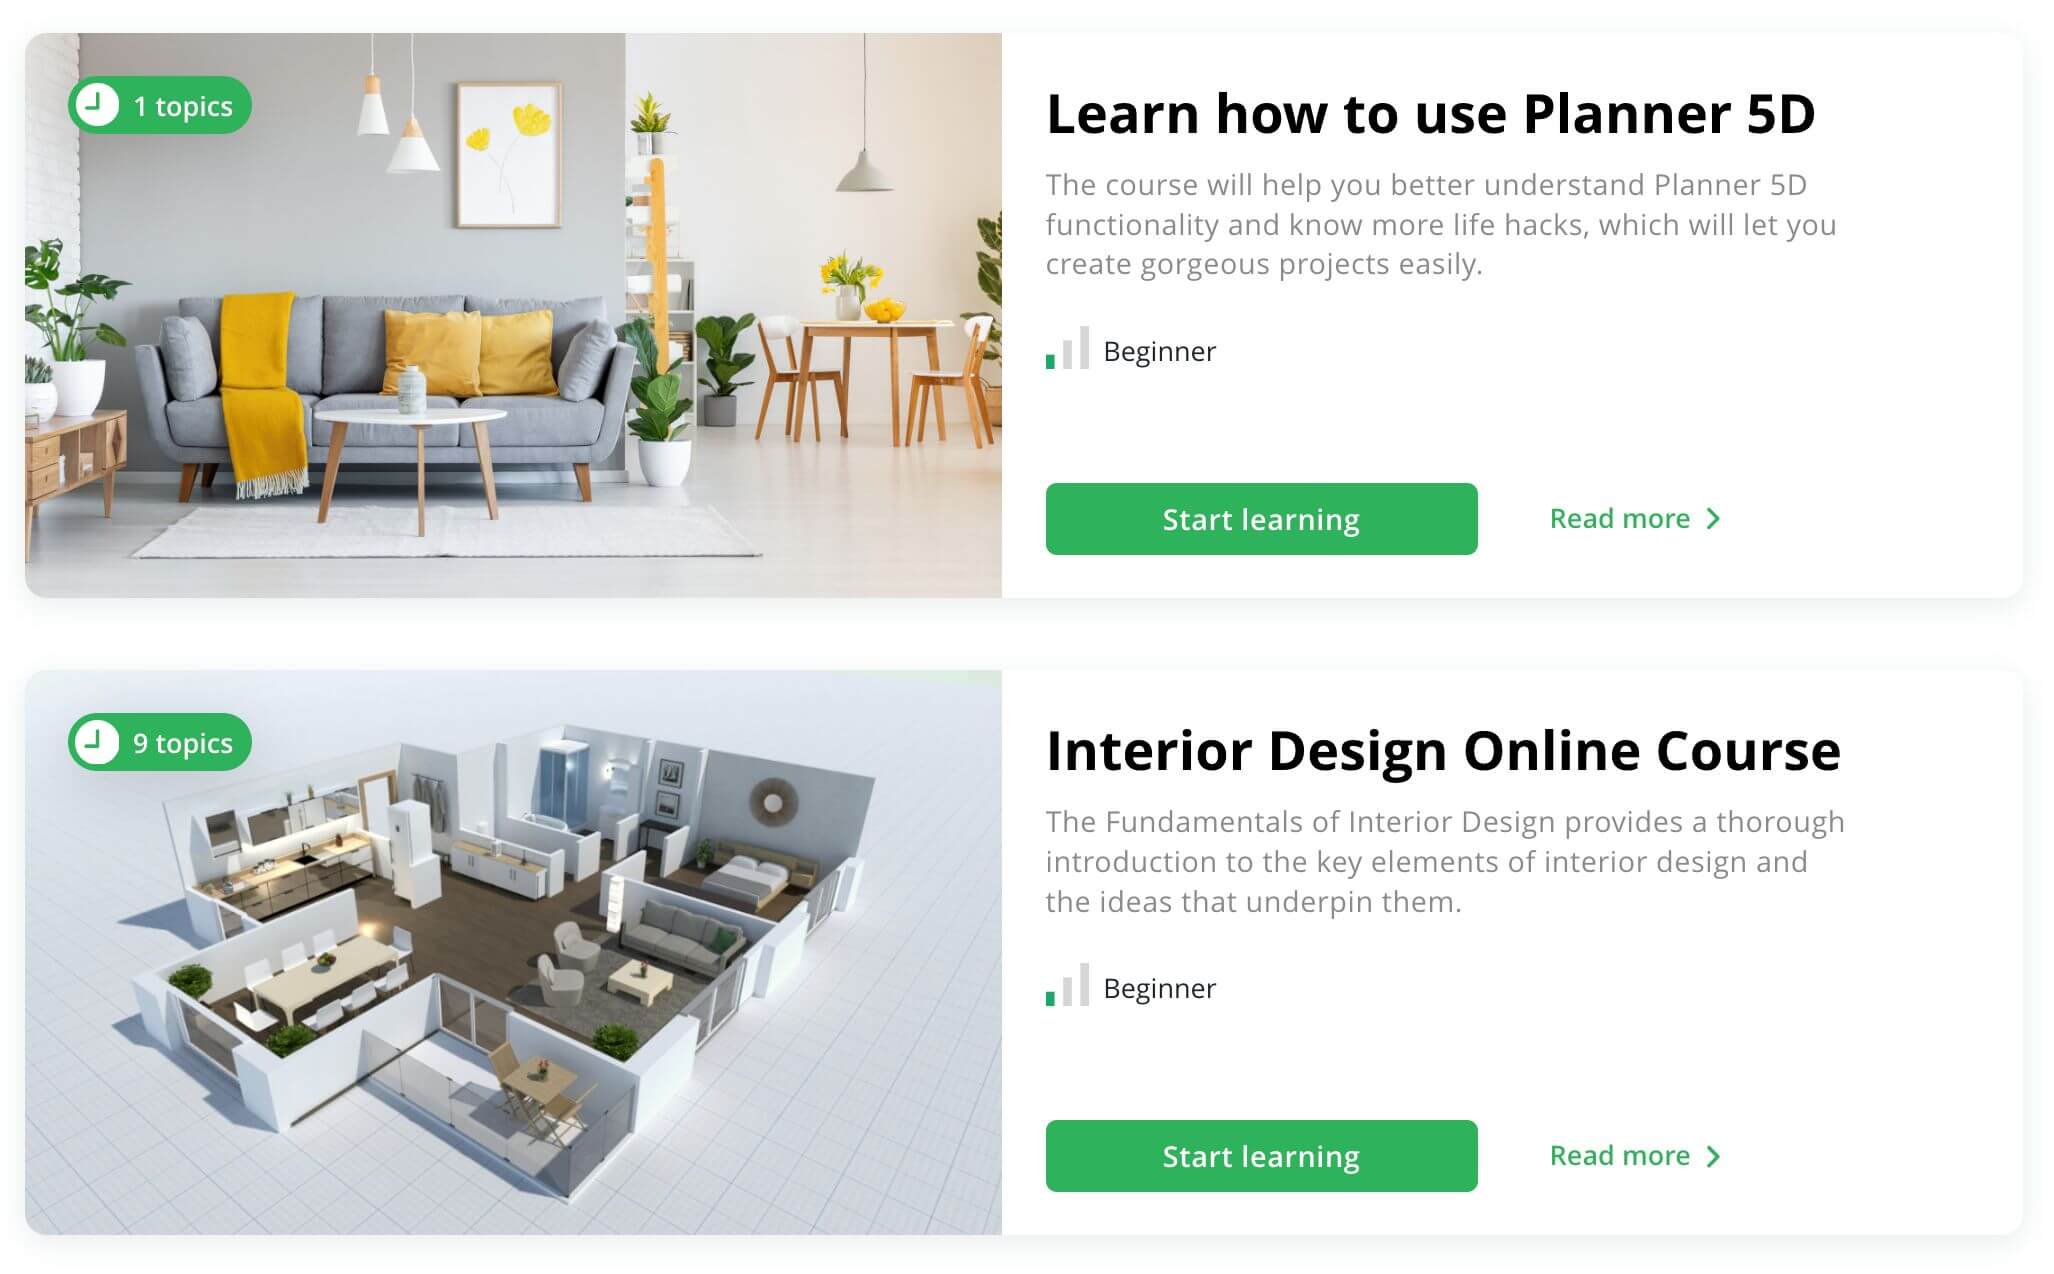 Apprenez le Design Intérieur avec Planner 5D